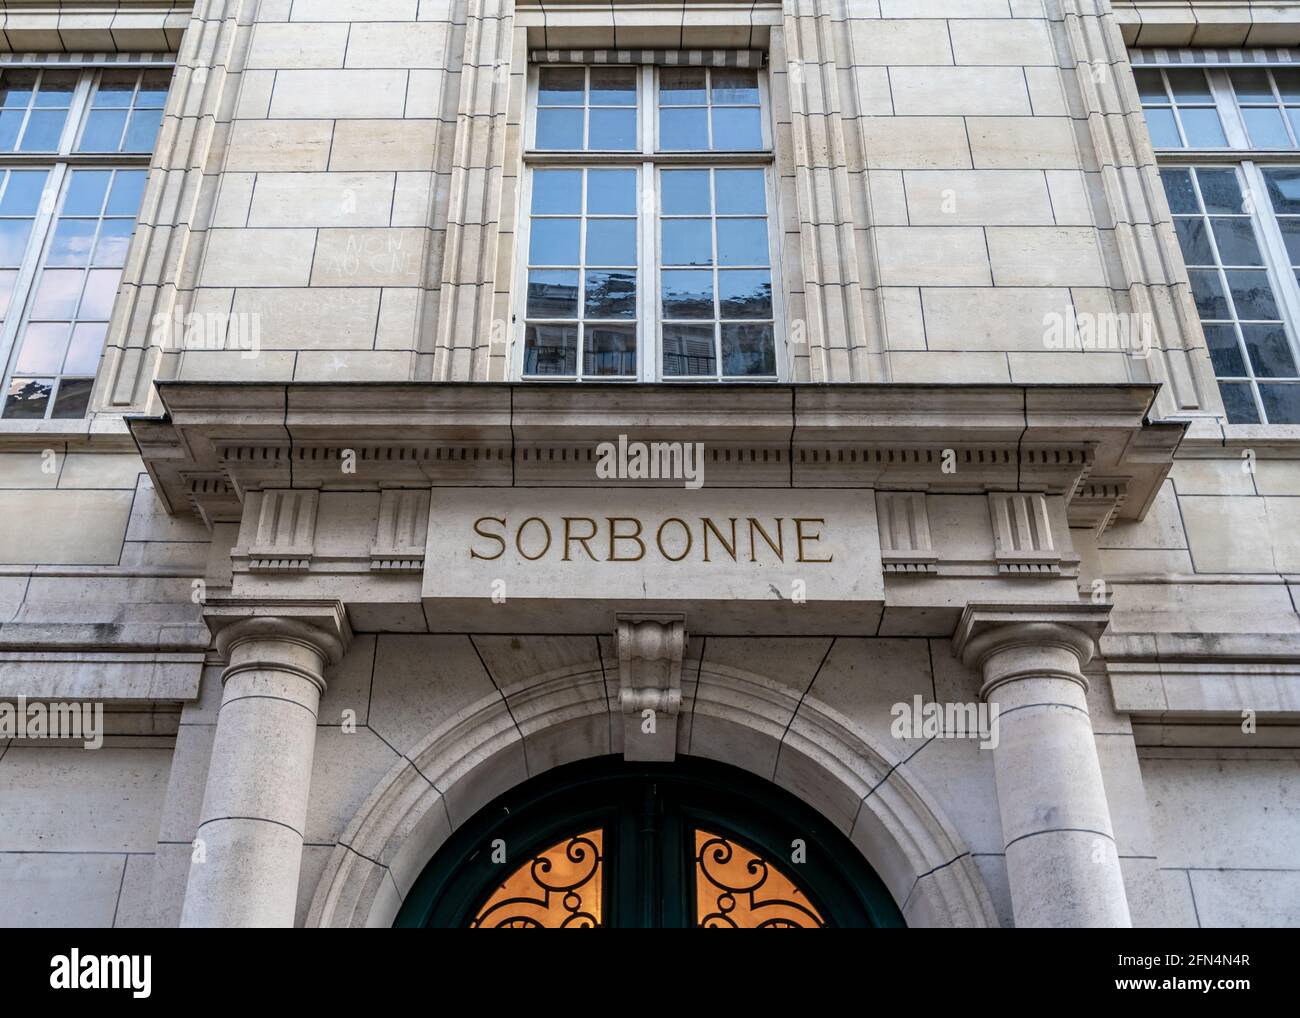 Eintritt an der Sorbonne Universität (Sorbonne Université), einer öffentlichen Forschungsuniversität in Paris, Frankreich. Stockfoto